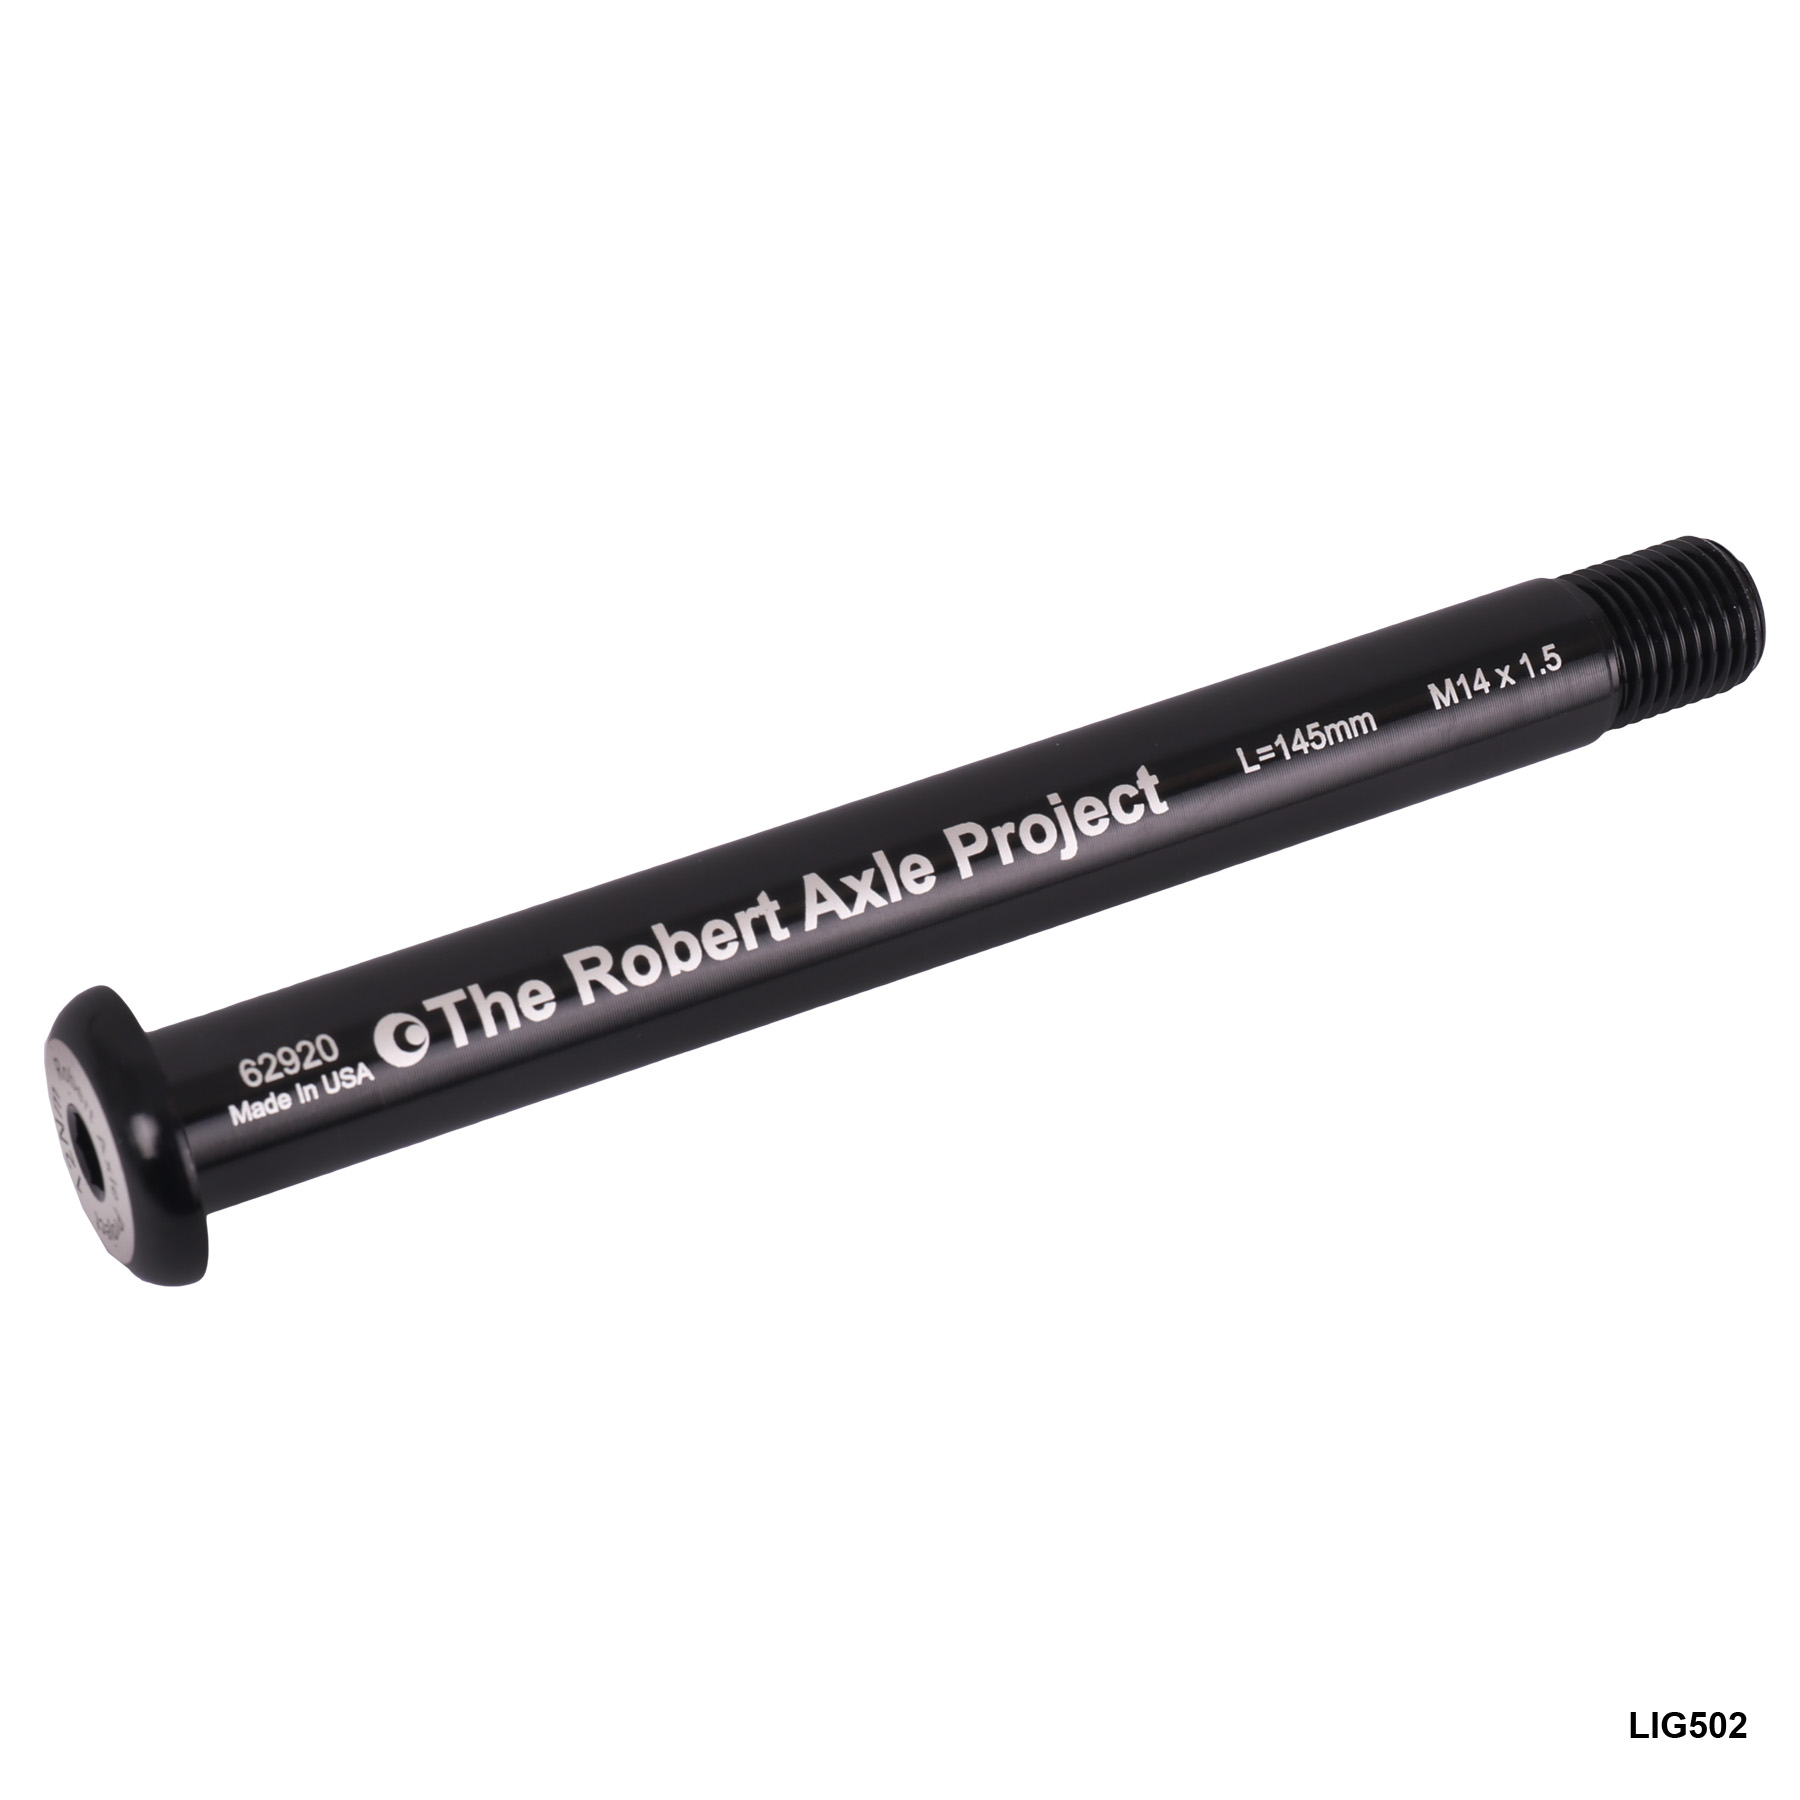 Produktbild von The Robert Axle Project - Lightning Steckachse für Vorderrad - 15x100/110mm - M14x1,5 133-155mm - LIG502/504/508/509